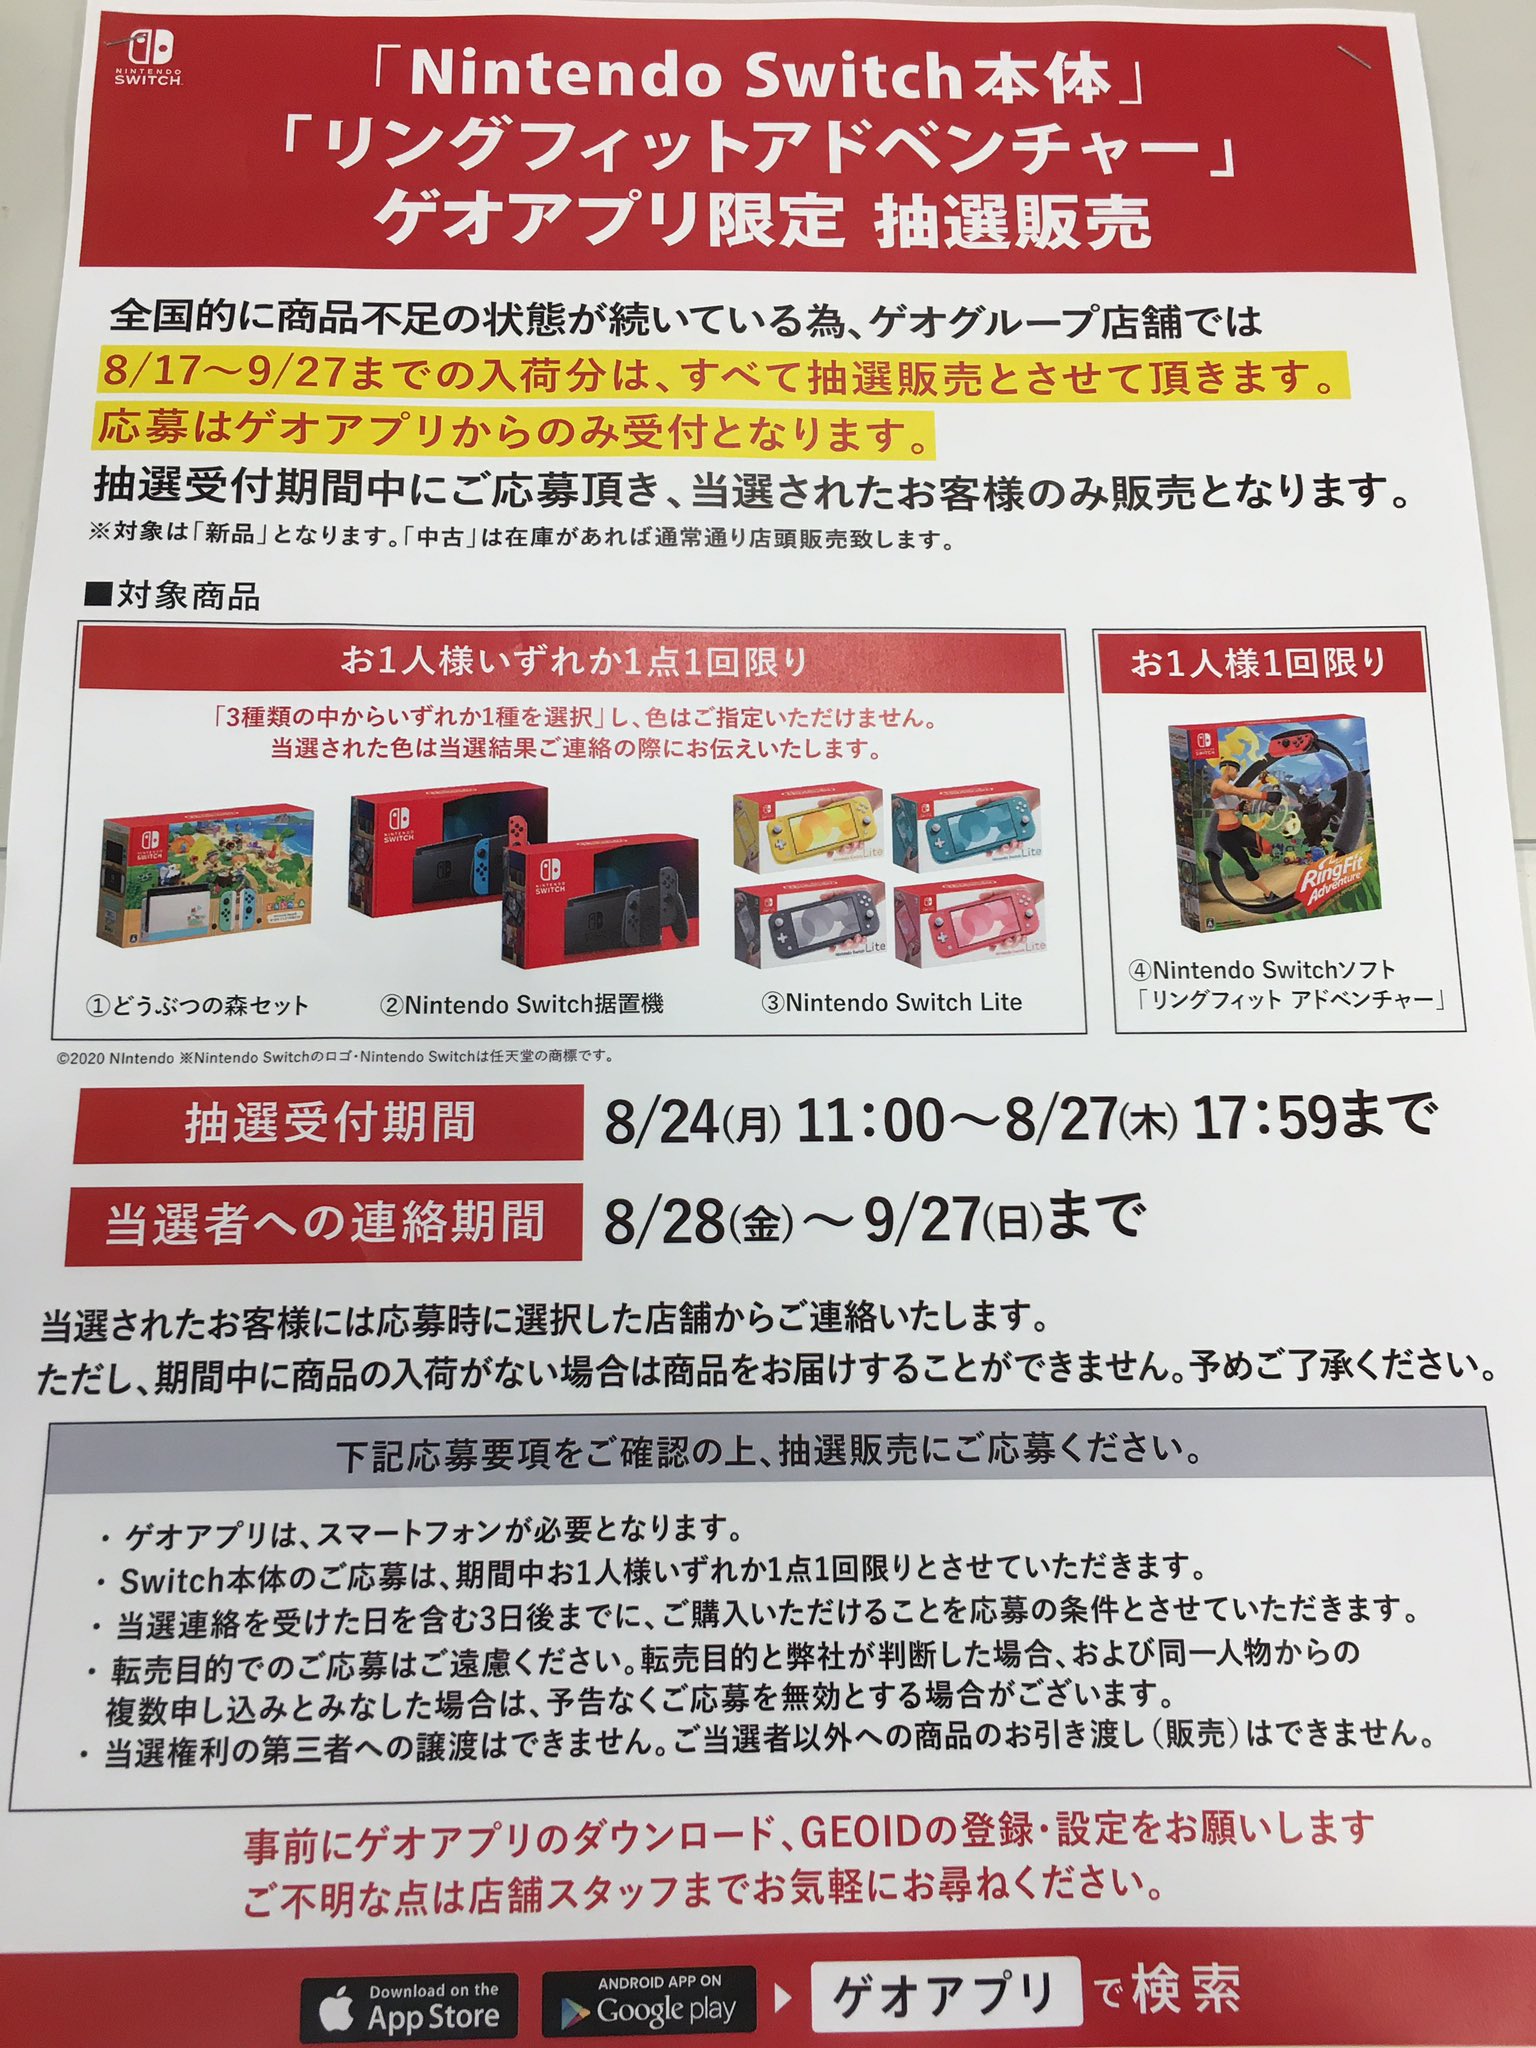 8月24日 11:00よりゲオアプリにて『Nintendo Switch 本体各種 